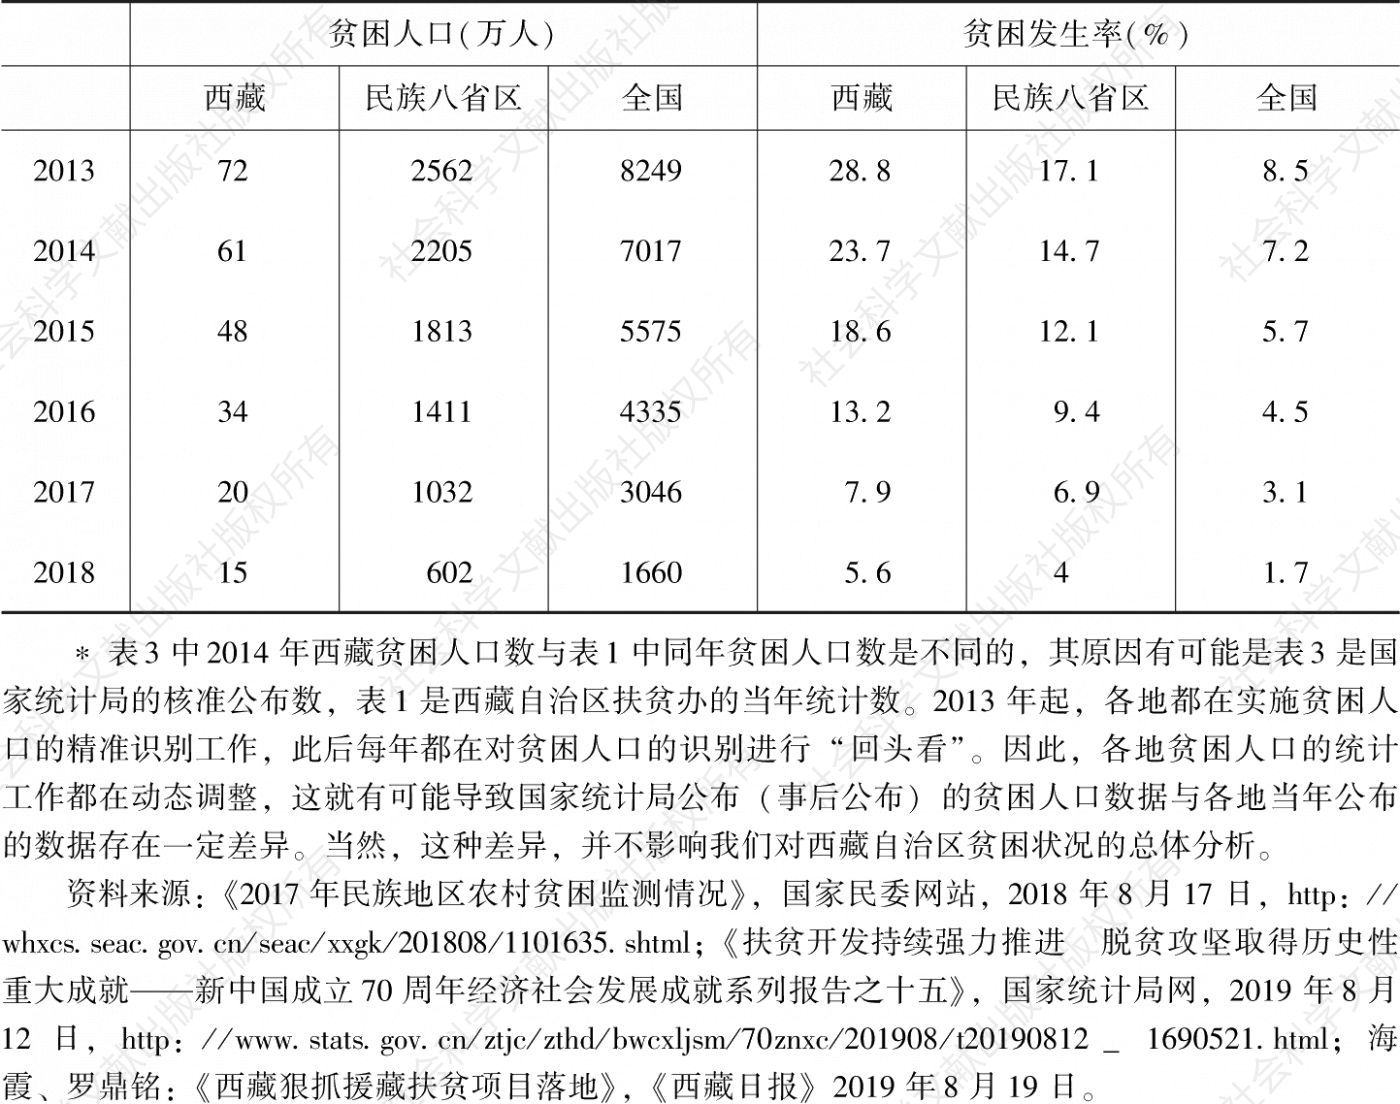 表2-3 西藏与民族八省区、全国贫困人口和贫困发生率比较*